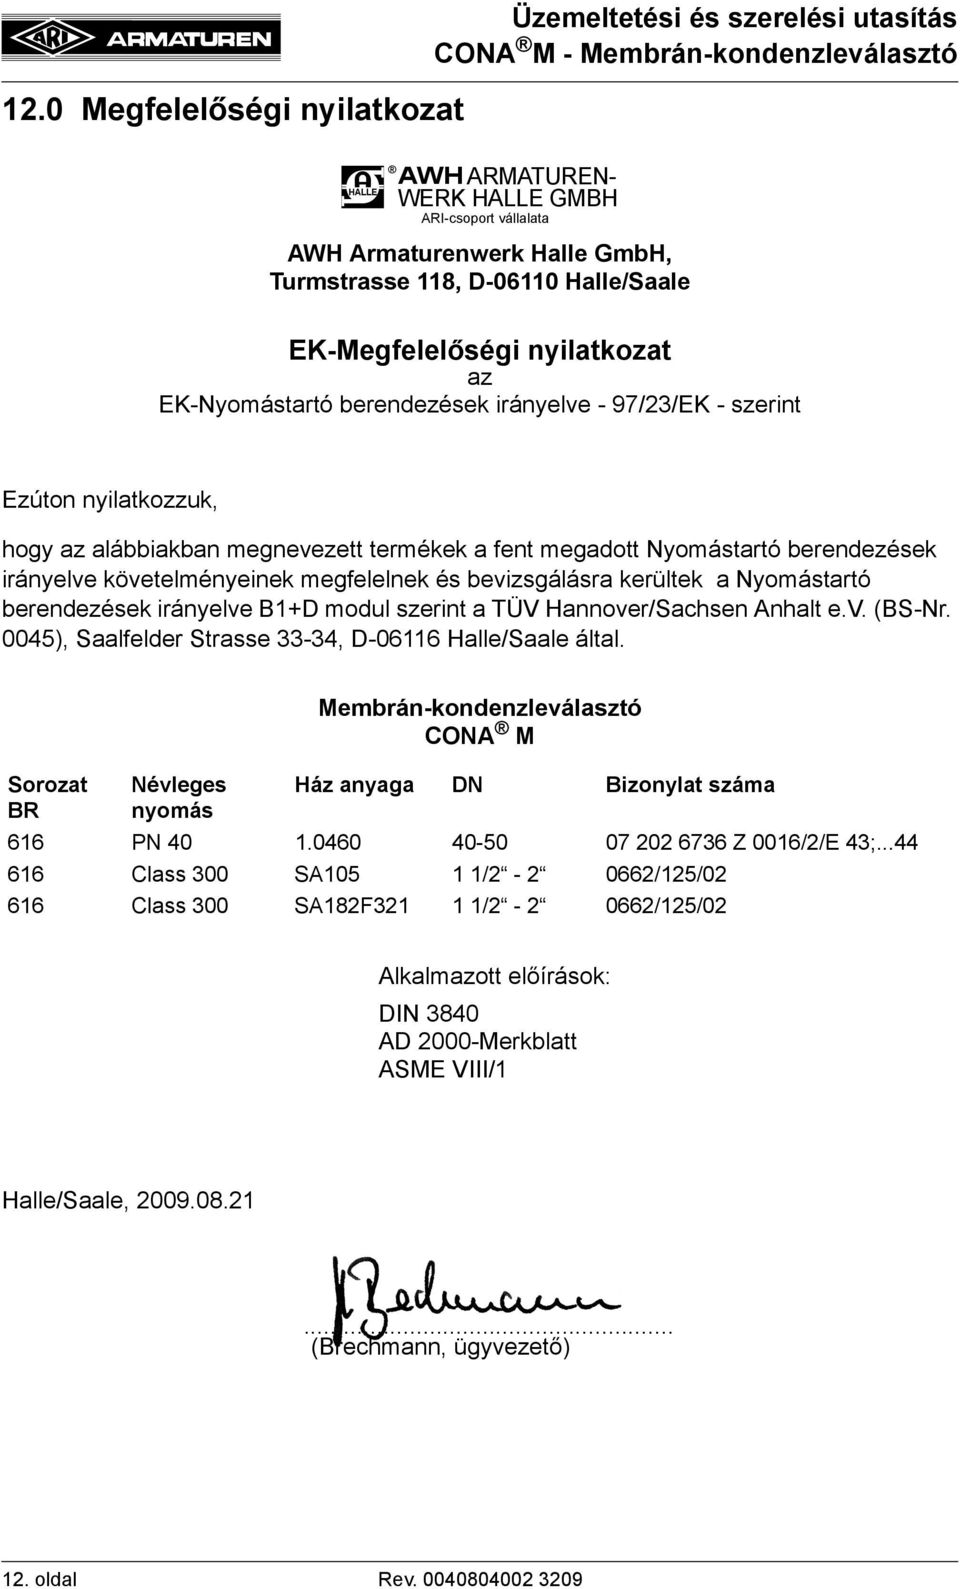 megfelelnek és bevizsgálásra kerültek a Nyomástartó berendezések irányelve B1+D modul szerint a TÜV Hannover/Sachsen Anhalt e.v. (BS-Nr. 0045), Saalfelder Strasse 33-34, D-06116 Halle/Saale által.